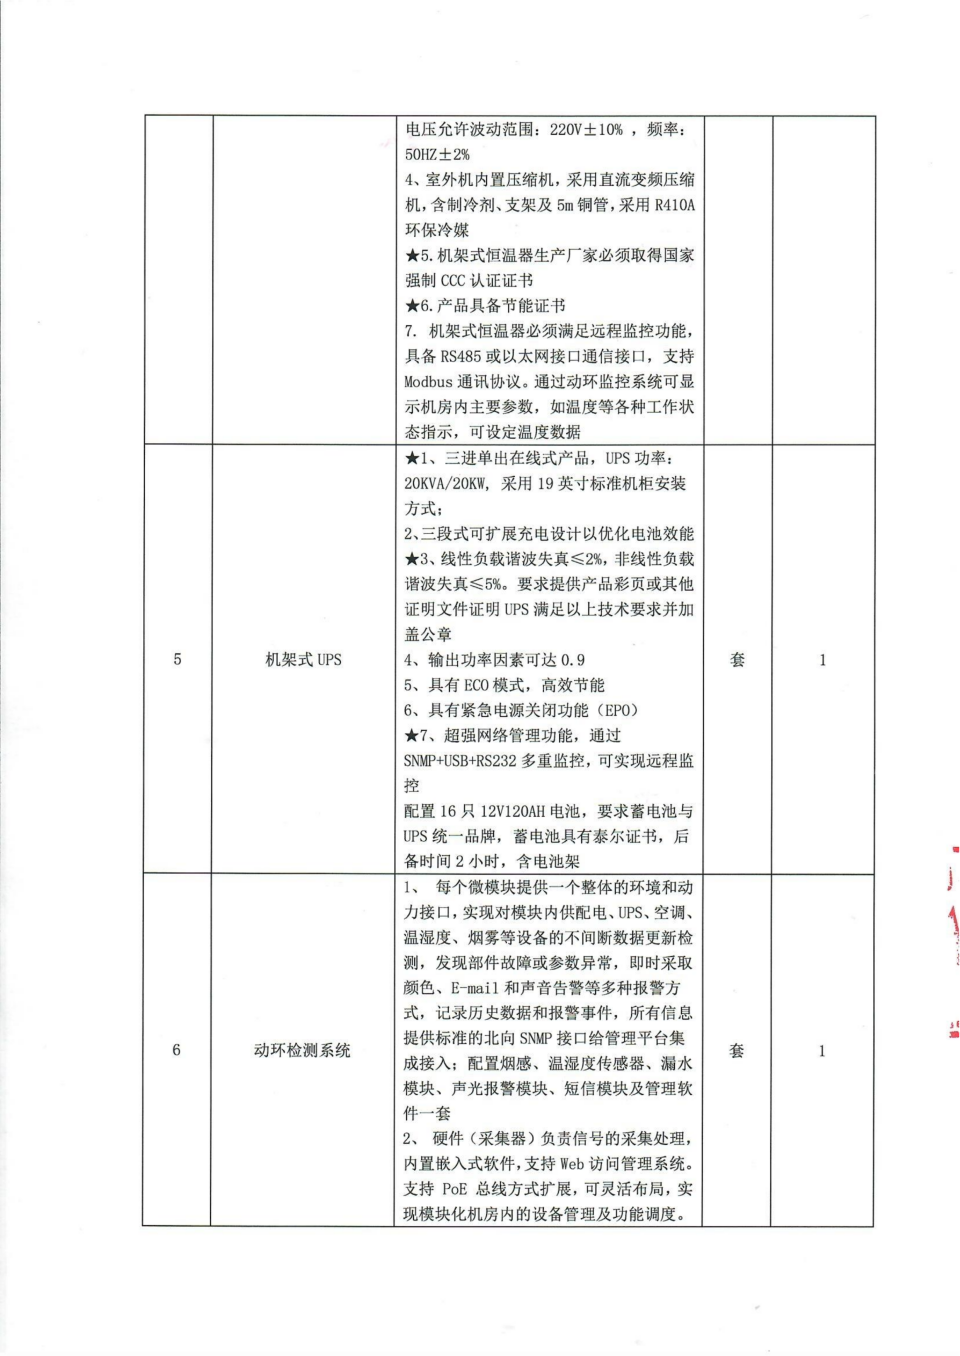 四川省文物考古研究院机房改造项目比选公告_03.png